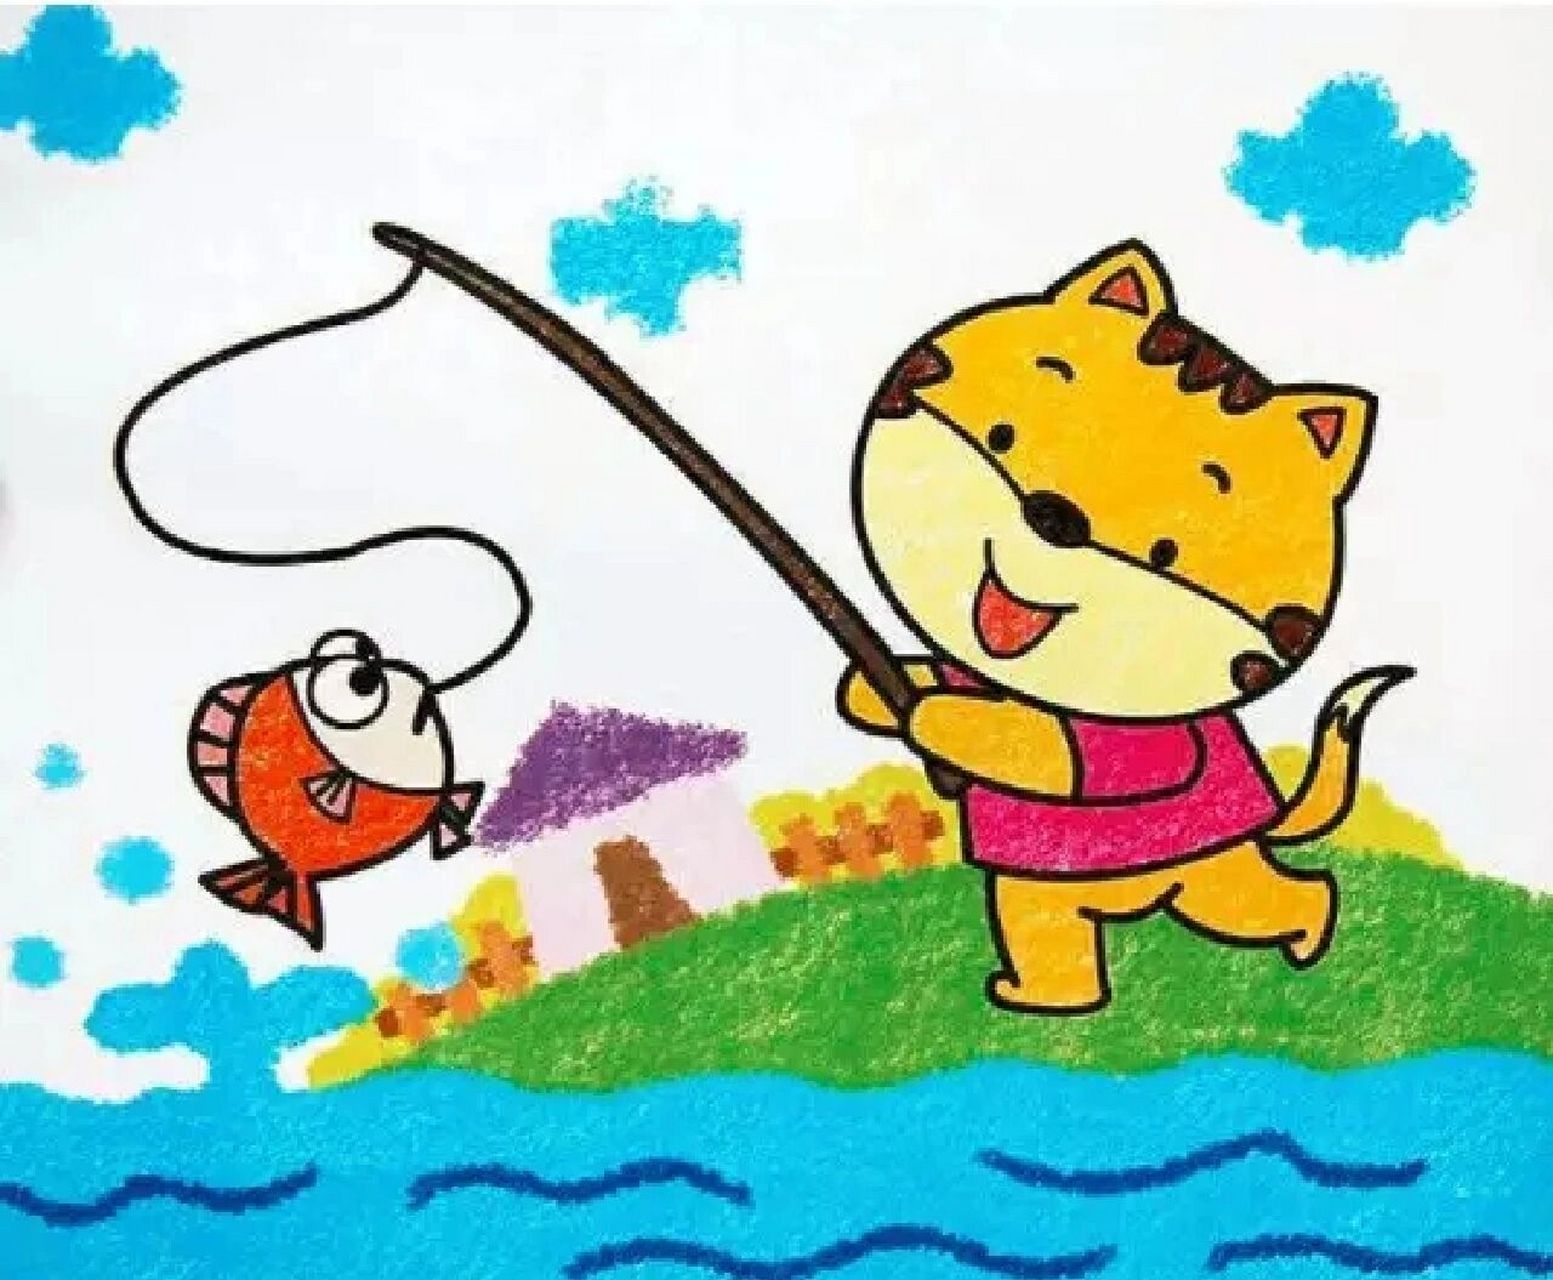 看图写话 小猫钓鱼 在一个风和日丽的日子里,有一只猫要去钓鱼